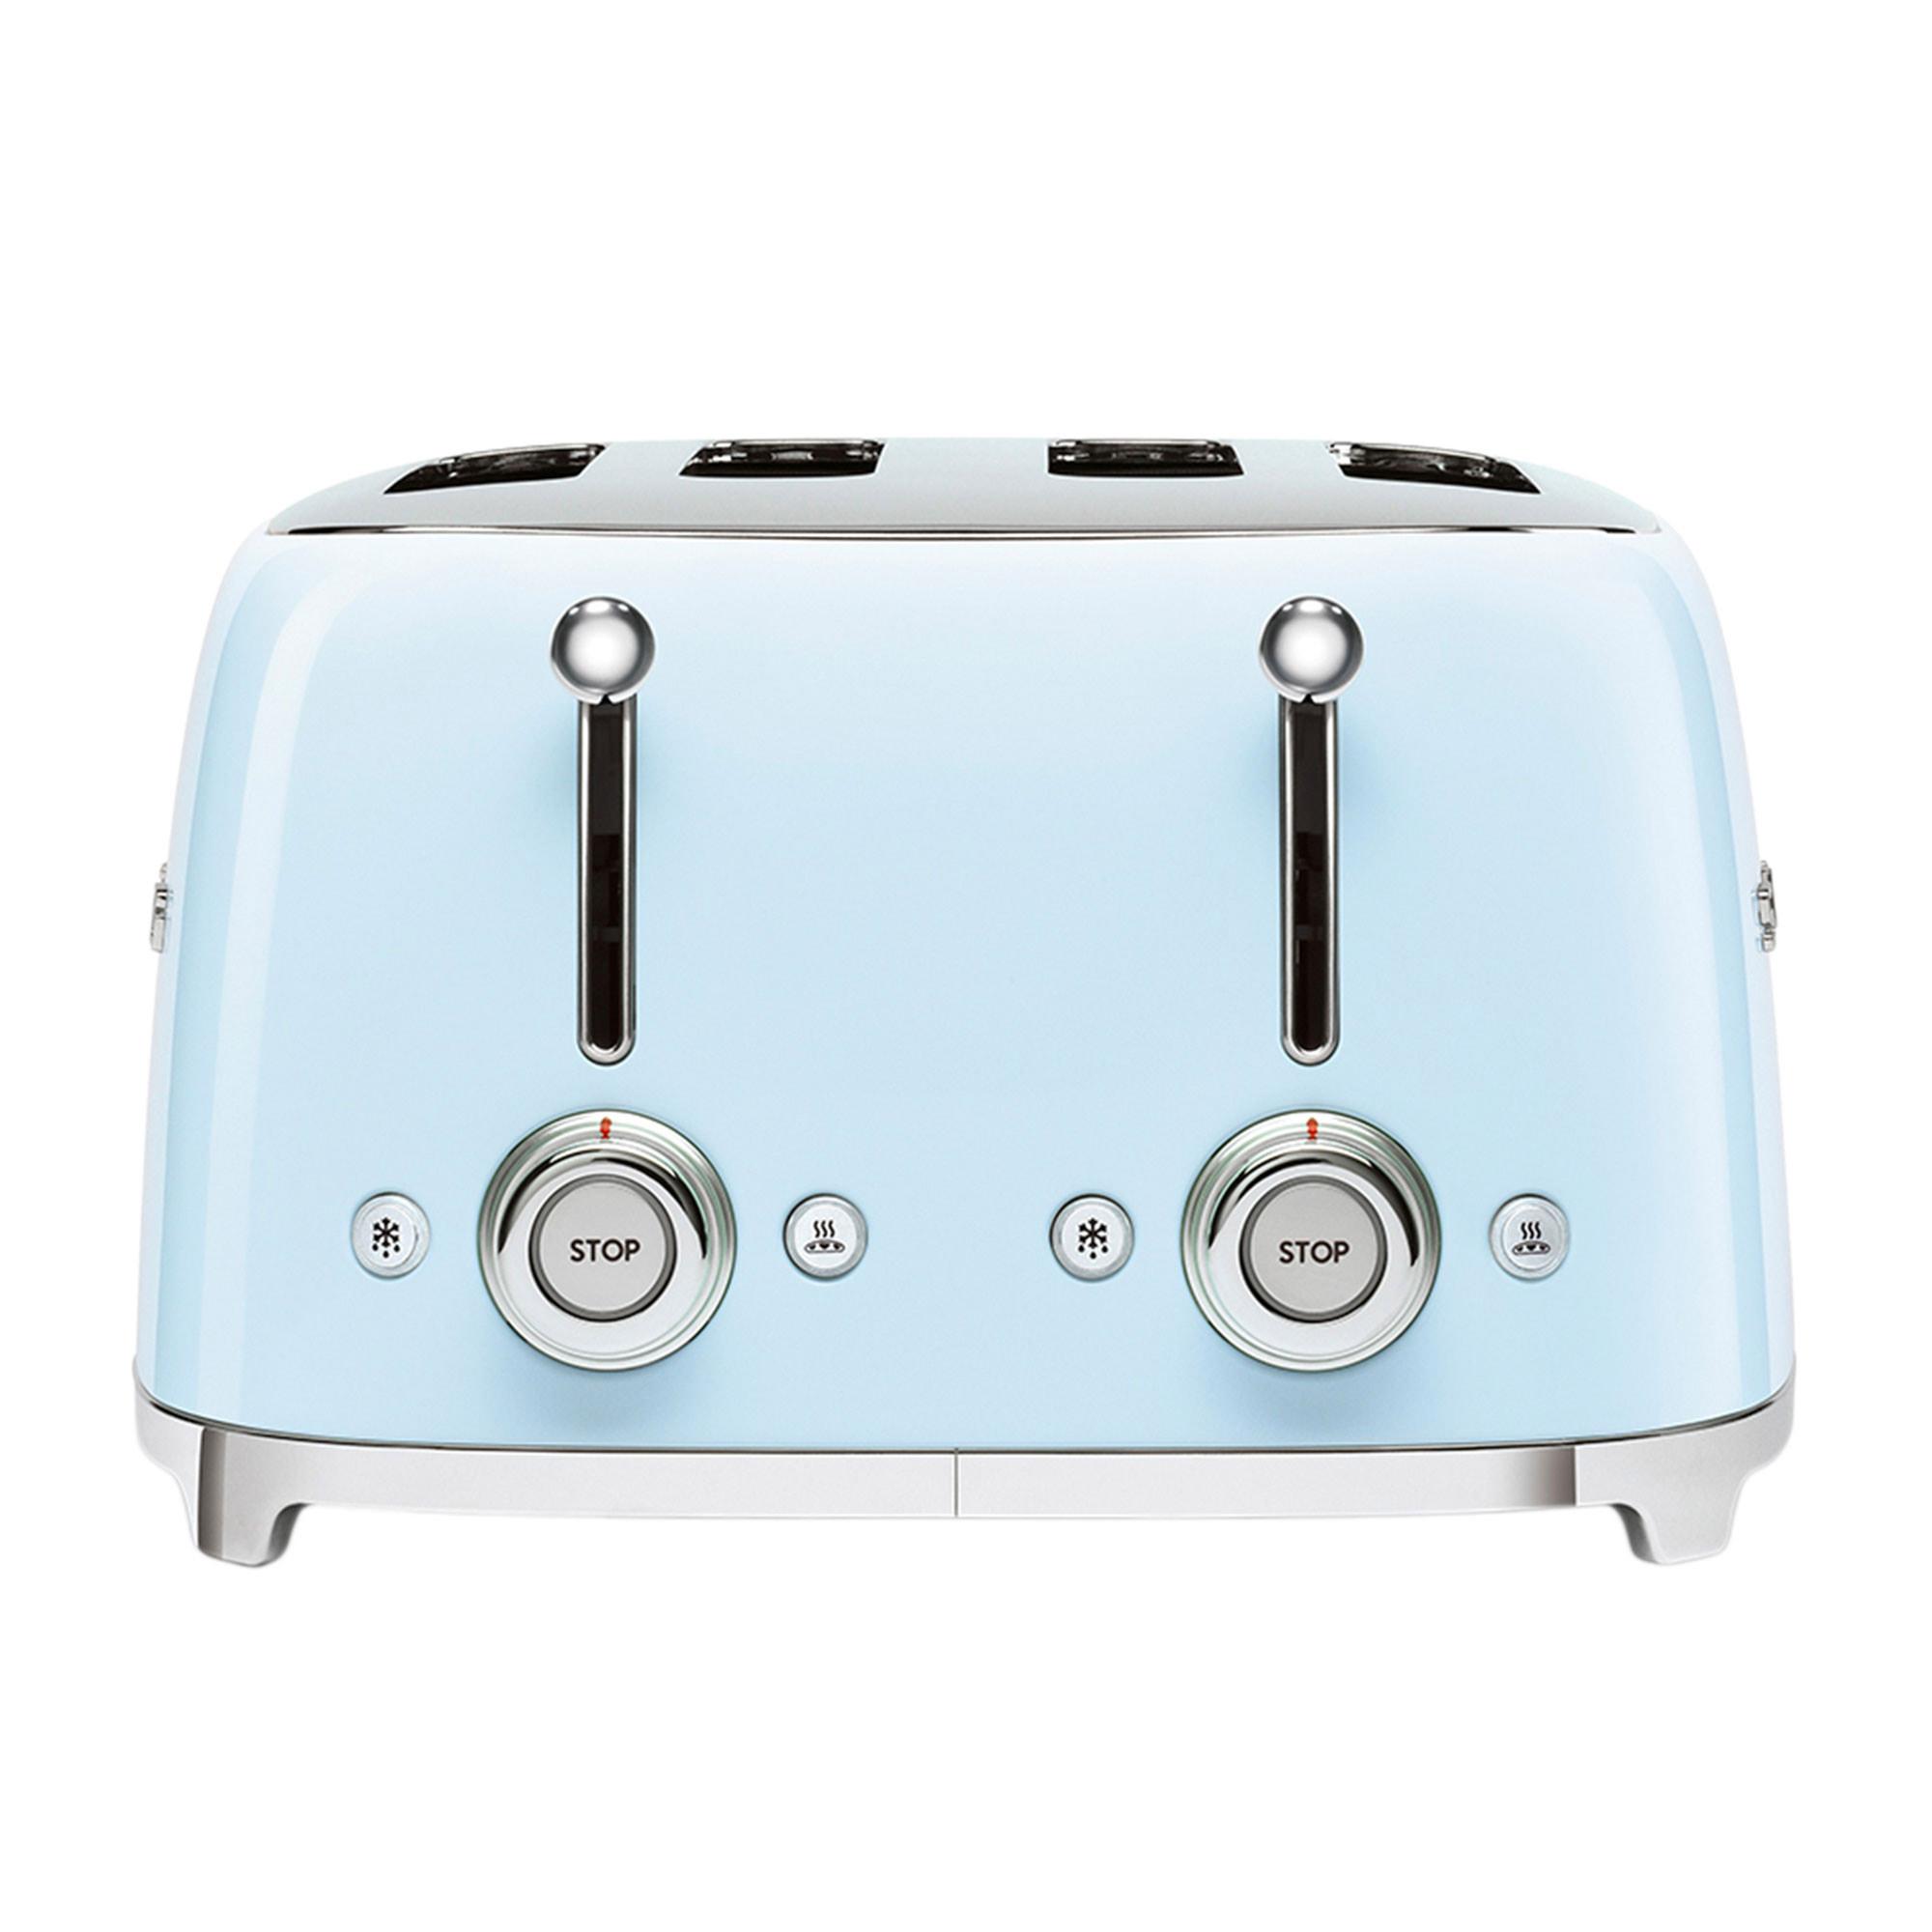 Smeg 50's Retro Style 4 Slot Toaster Pastel Blue Image 5